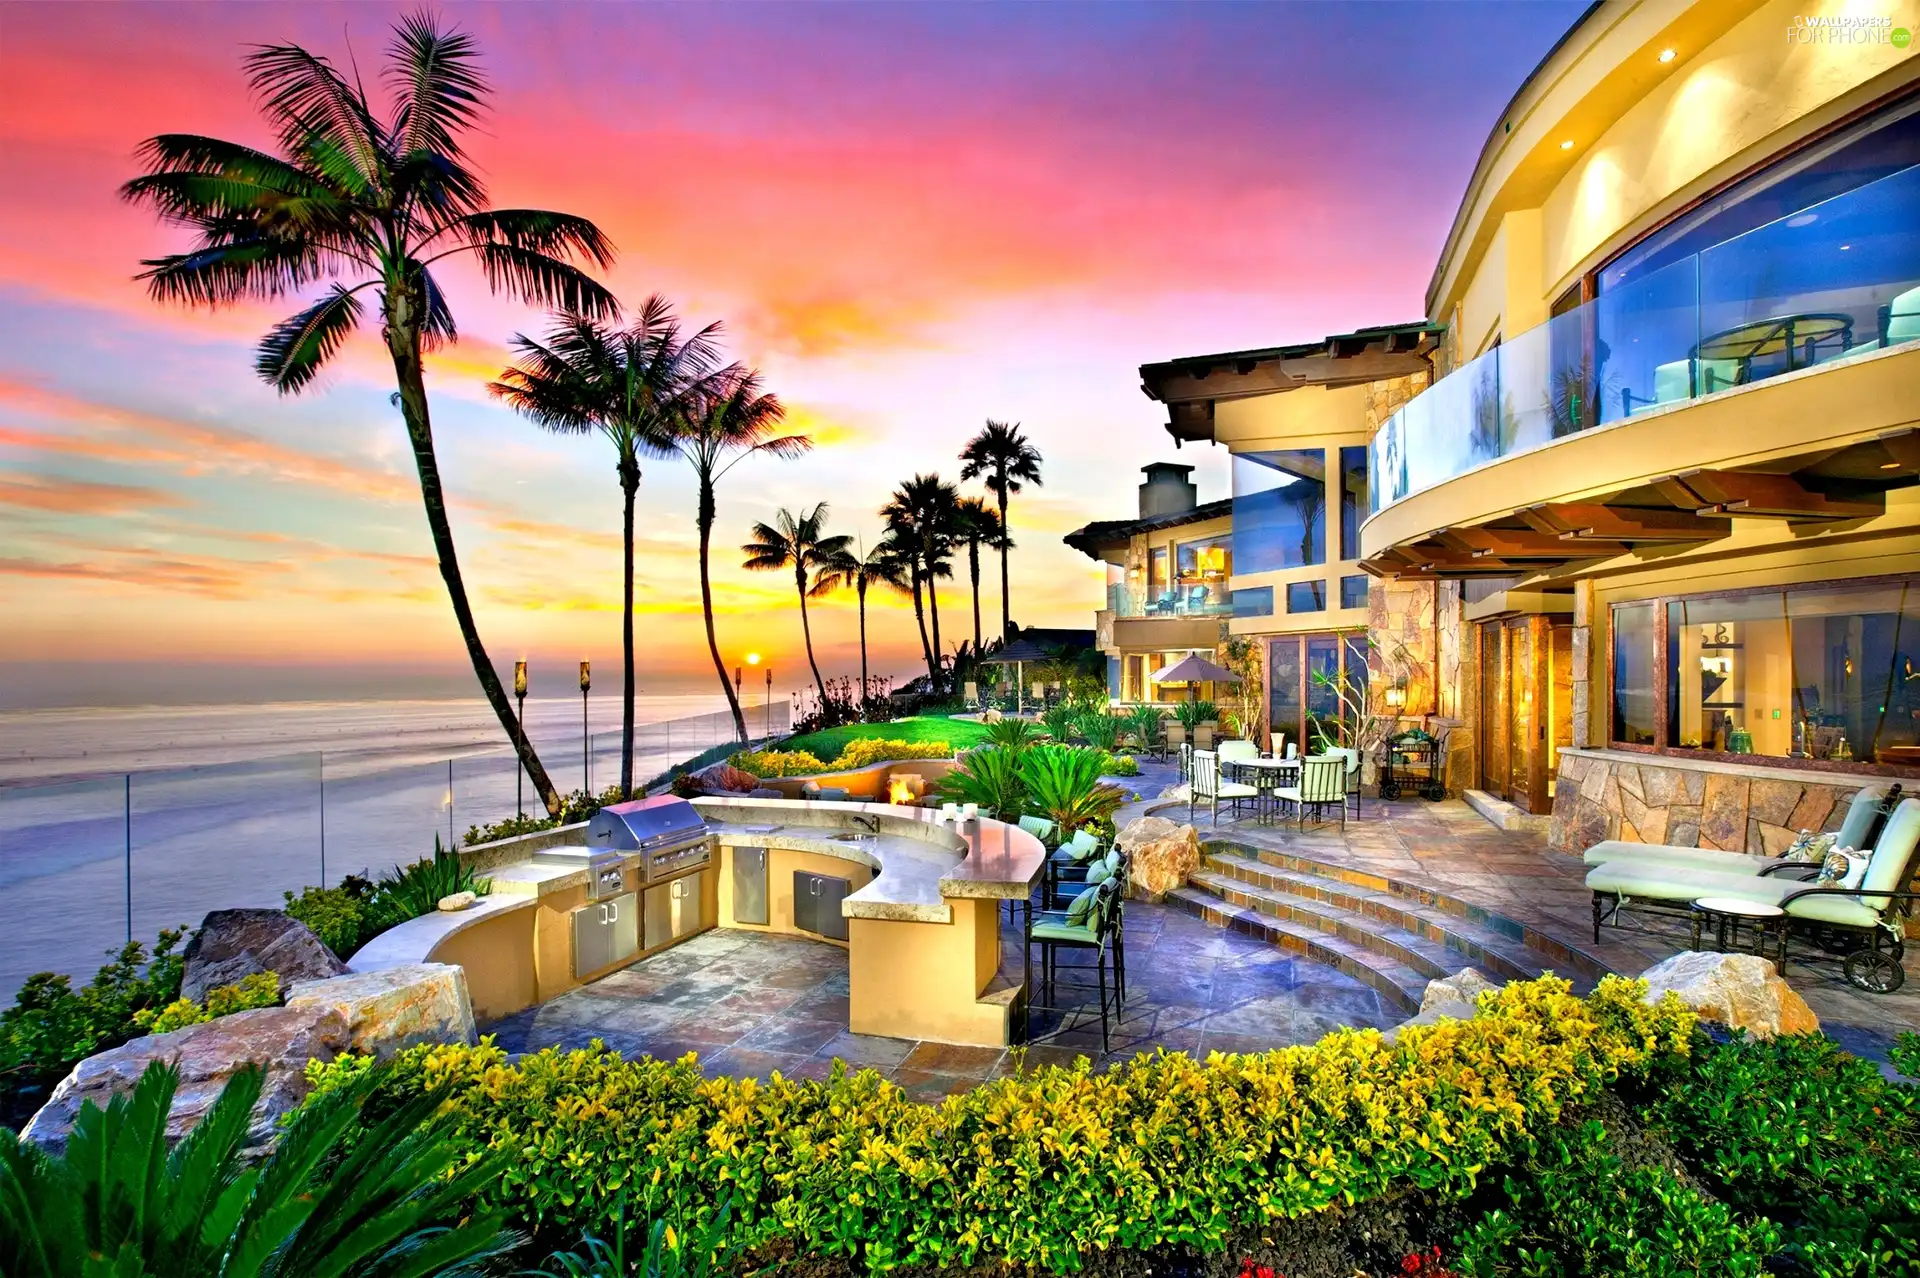 Palms, house, sea